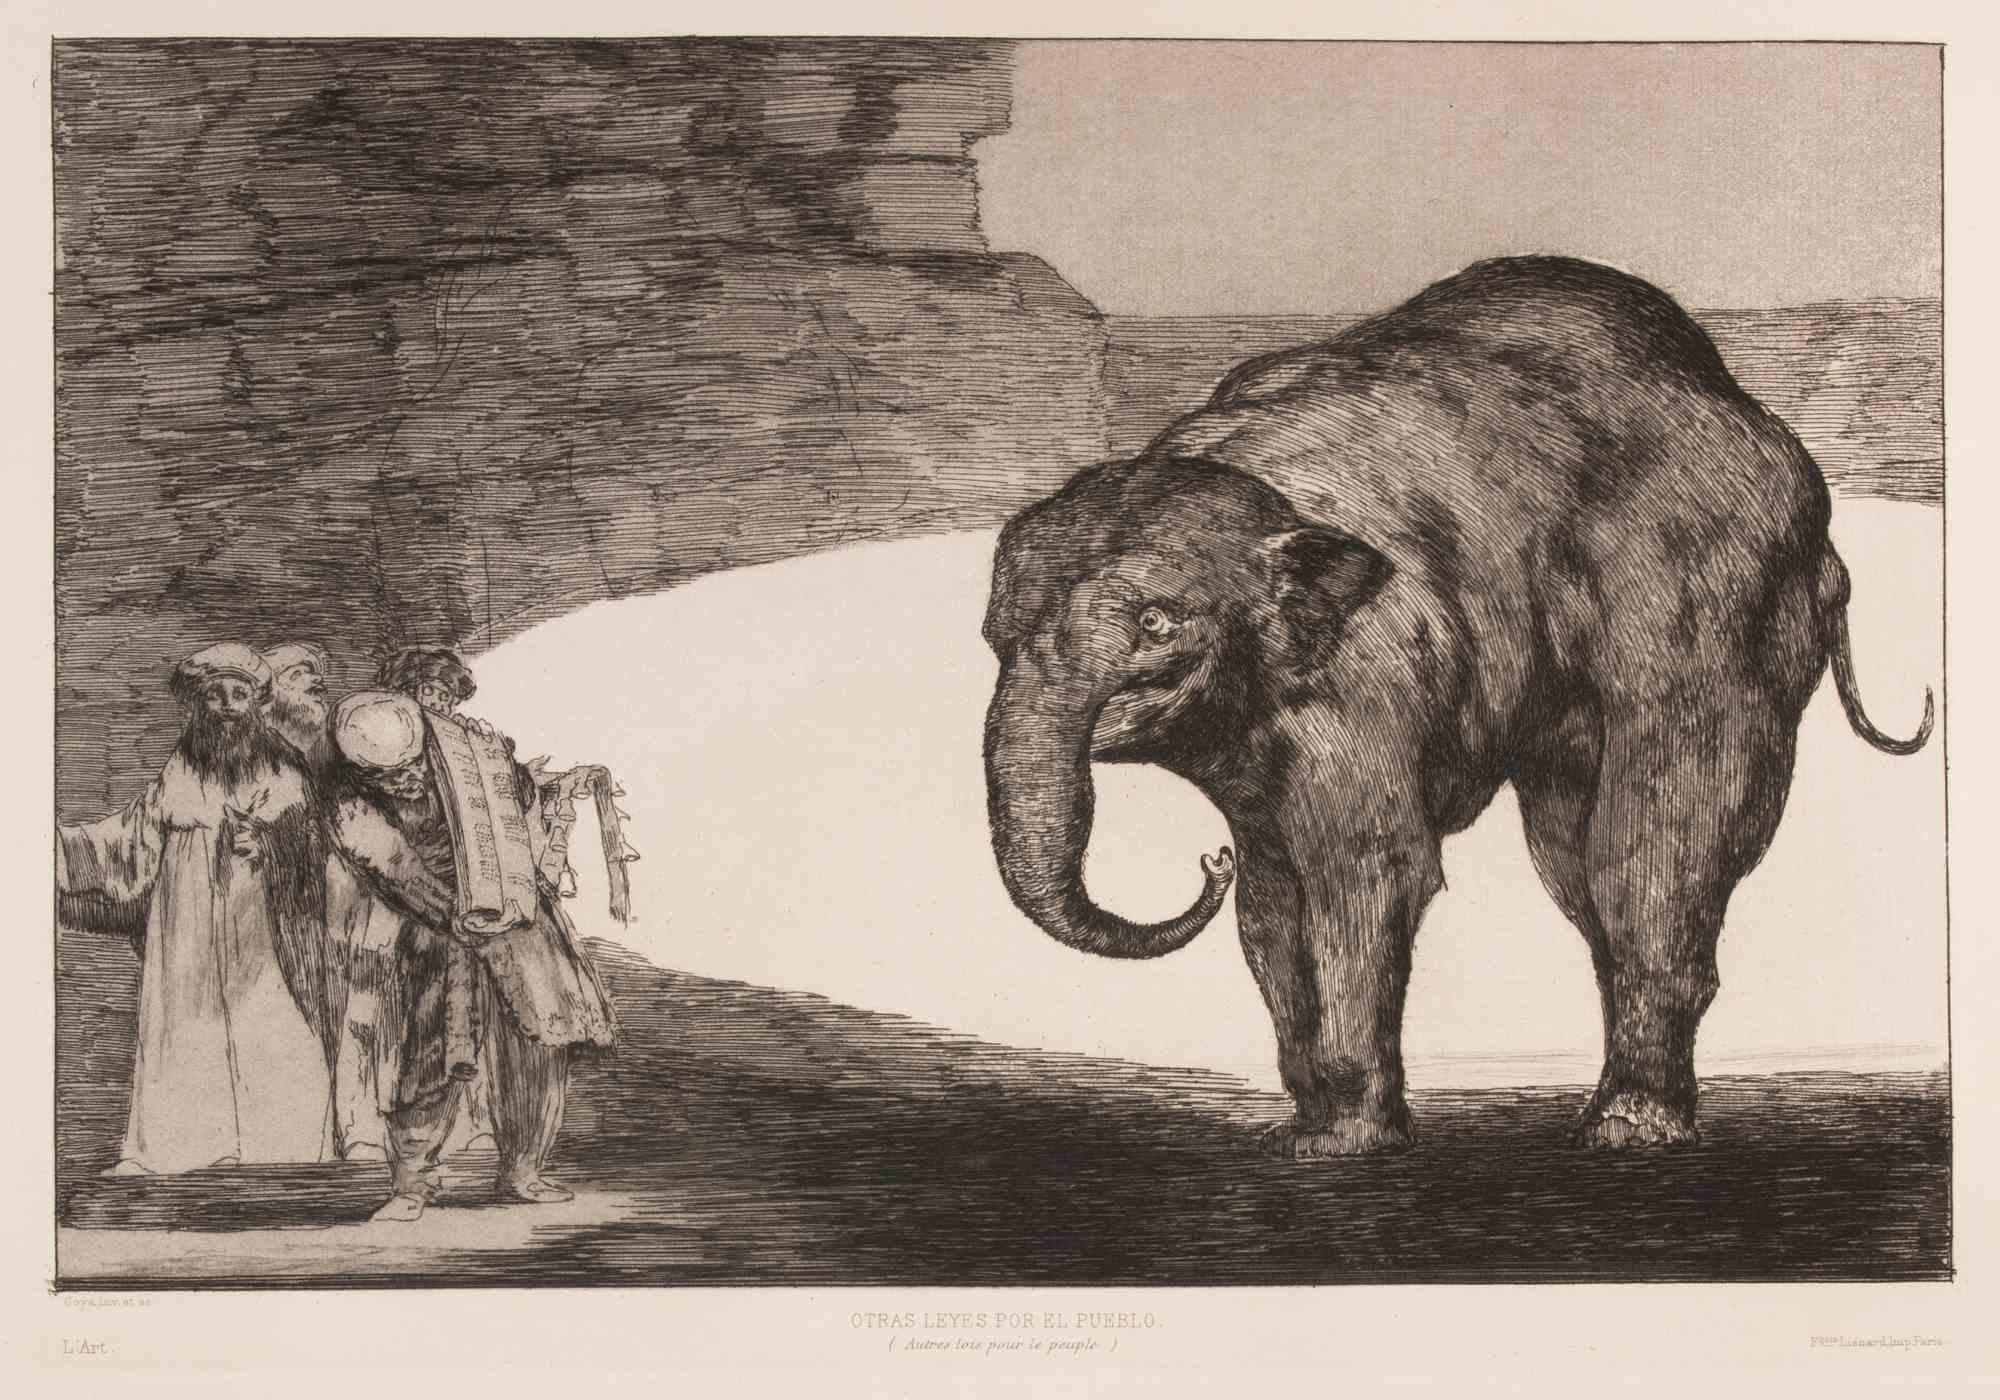 Otras Leyes por el Pueblo - Etching and and Aquatint by Francisco Goya - 1877 For Sale 1